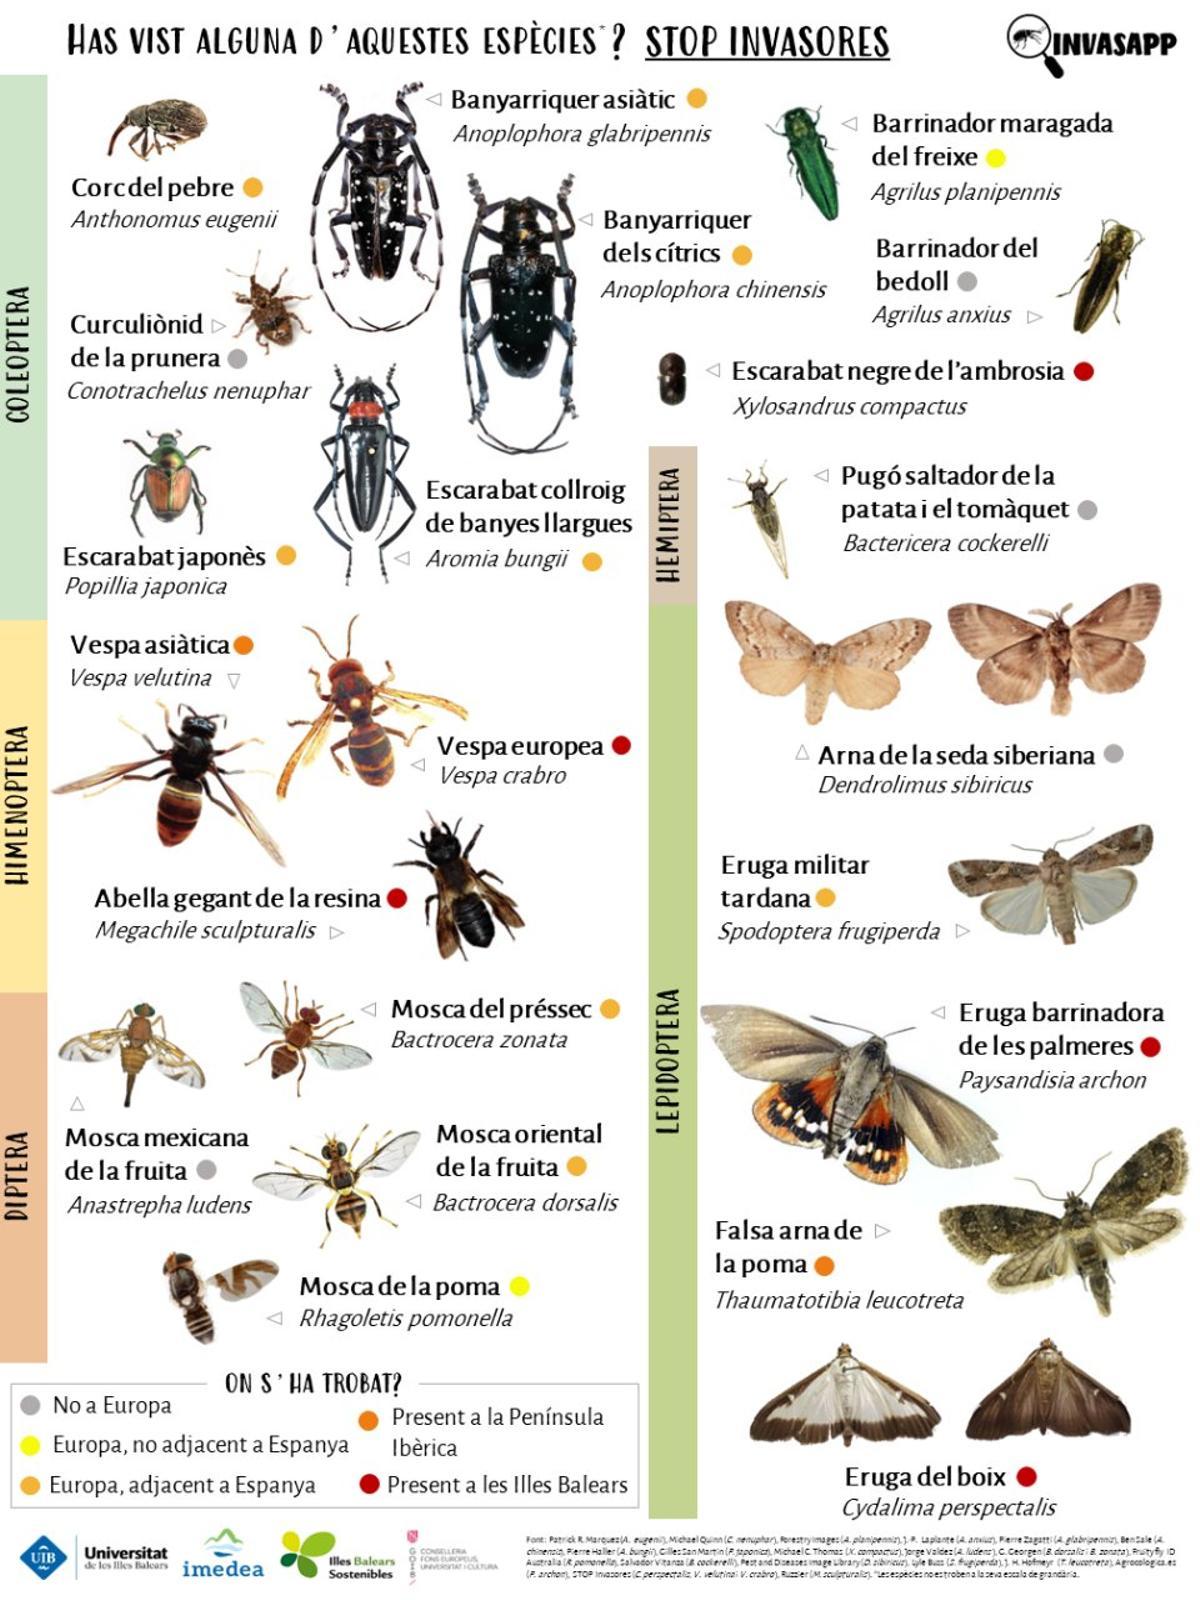 Das Poster hilft dabei, eingeschleppte Insektenarten zu identifizieren.